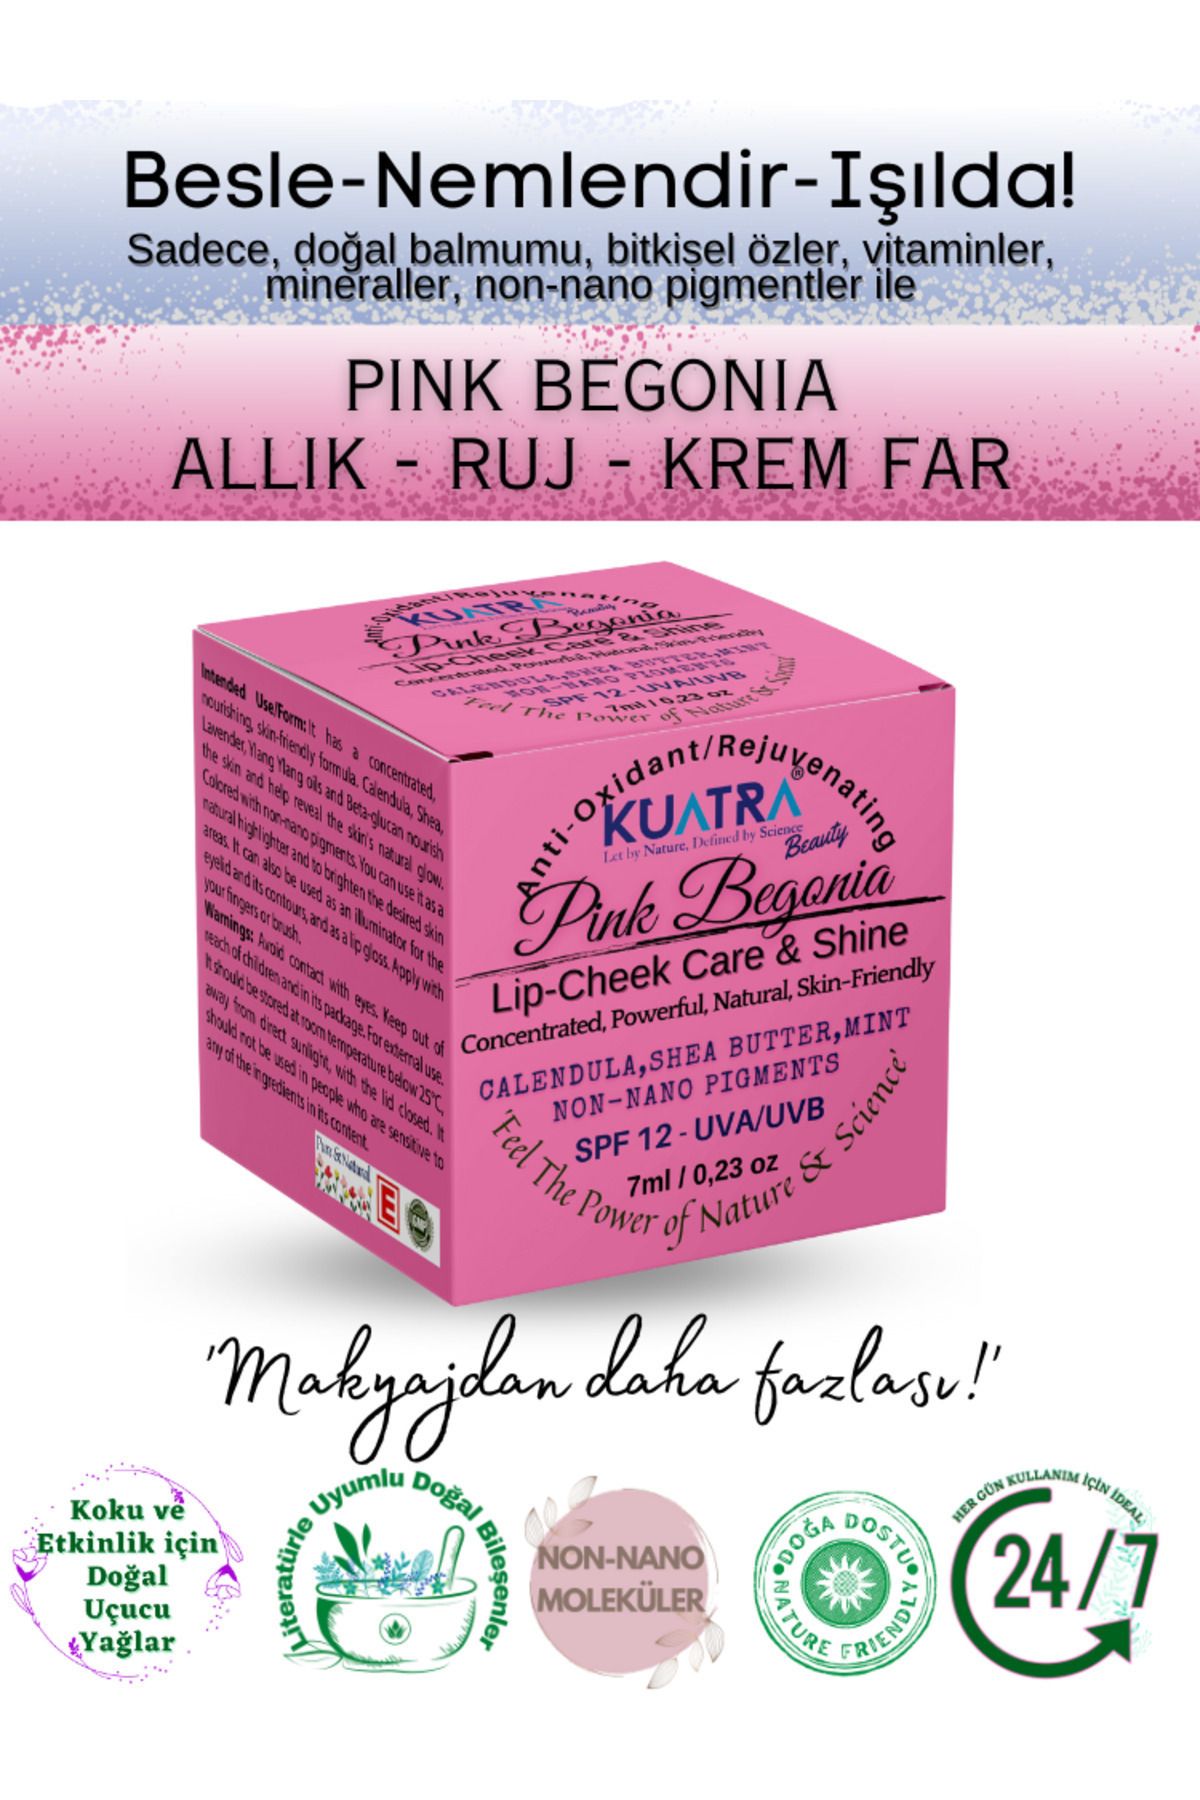 Kuatra Pink Begonia Nemlendirici - Antioksidan Işıltı Veren Balm (DOĞAL İÇERİKLİ RUJ- ALLIK-FAR)